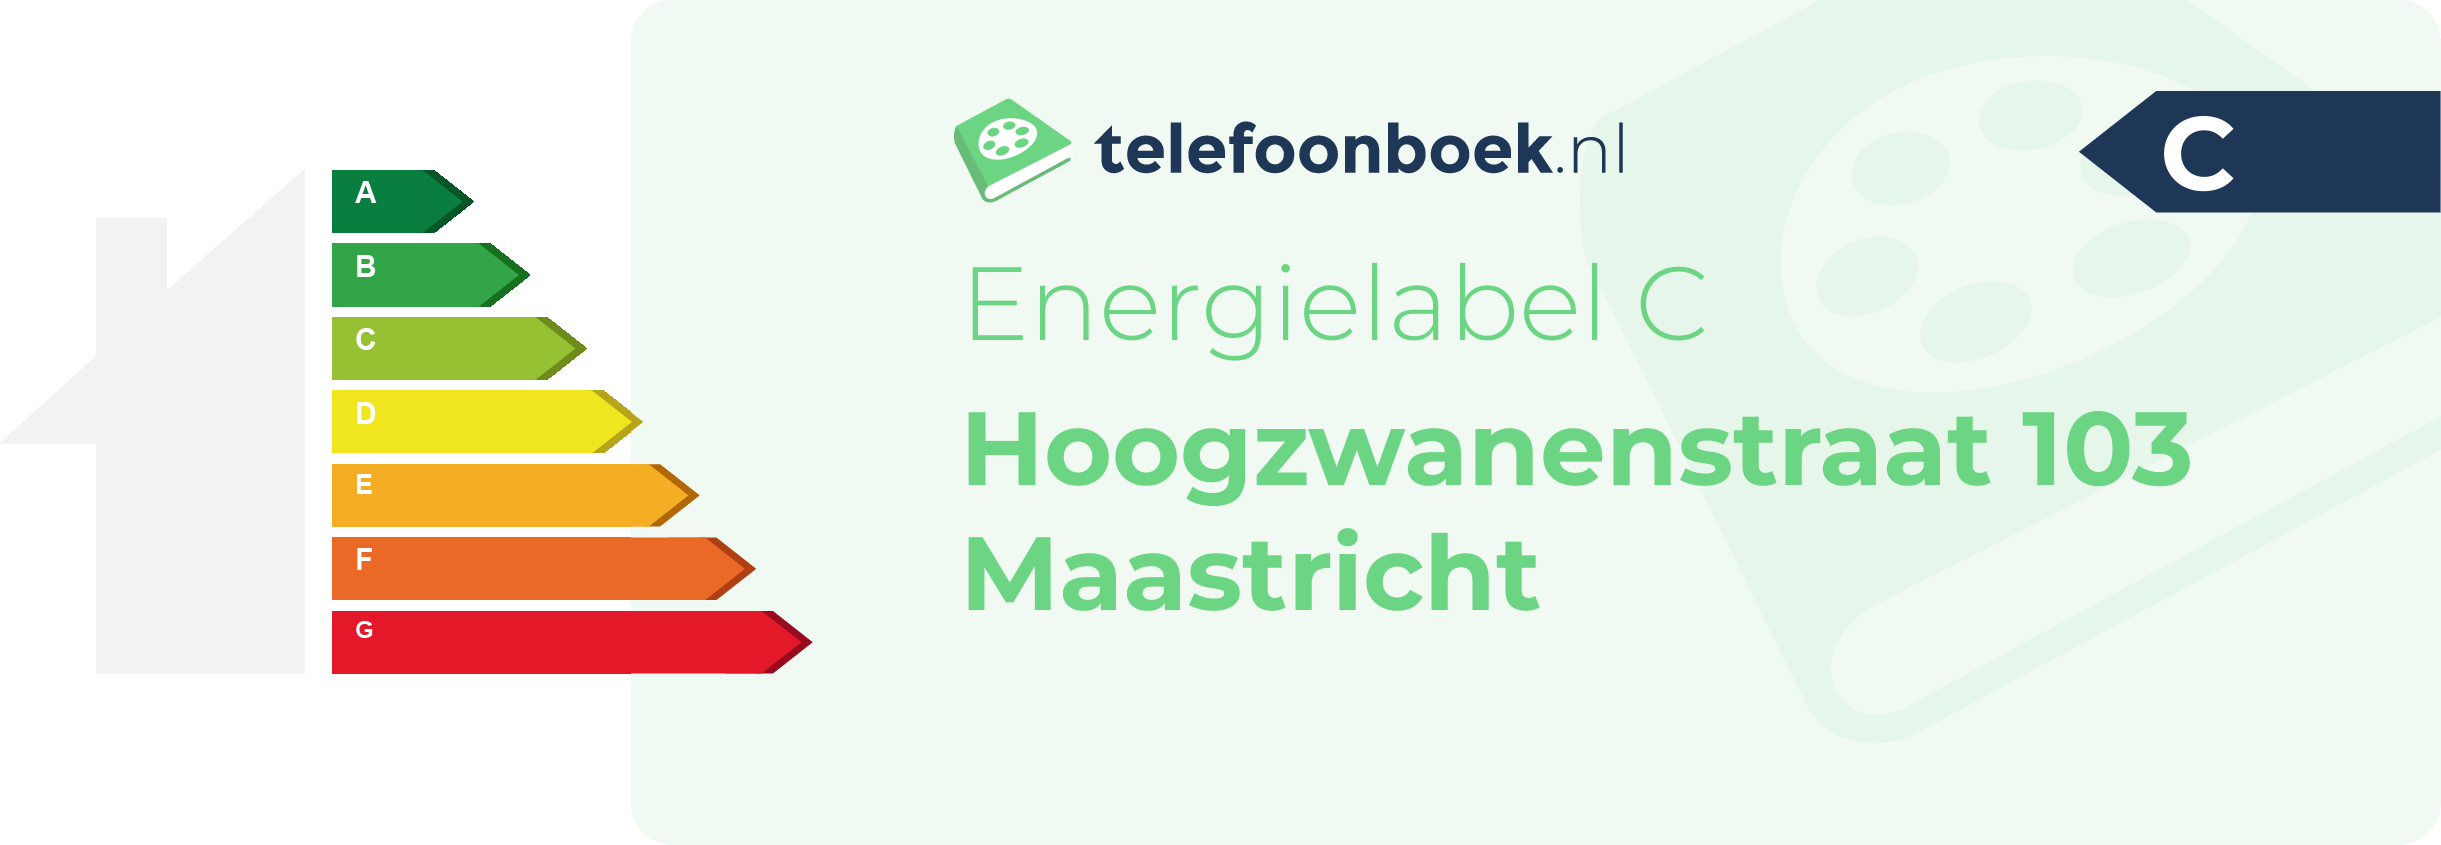 Energielabel Hoogzwanenstraat 103 Maastricht